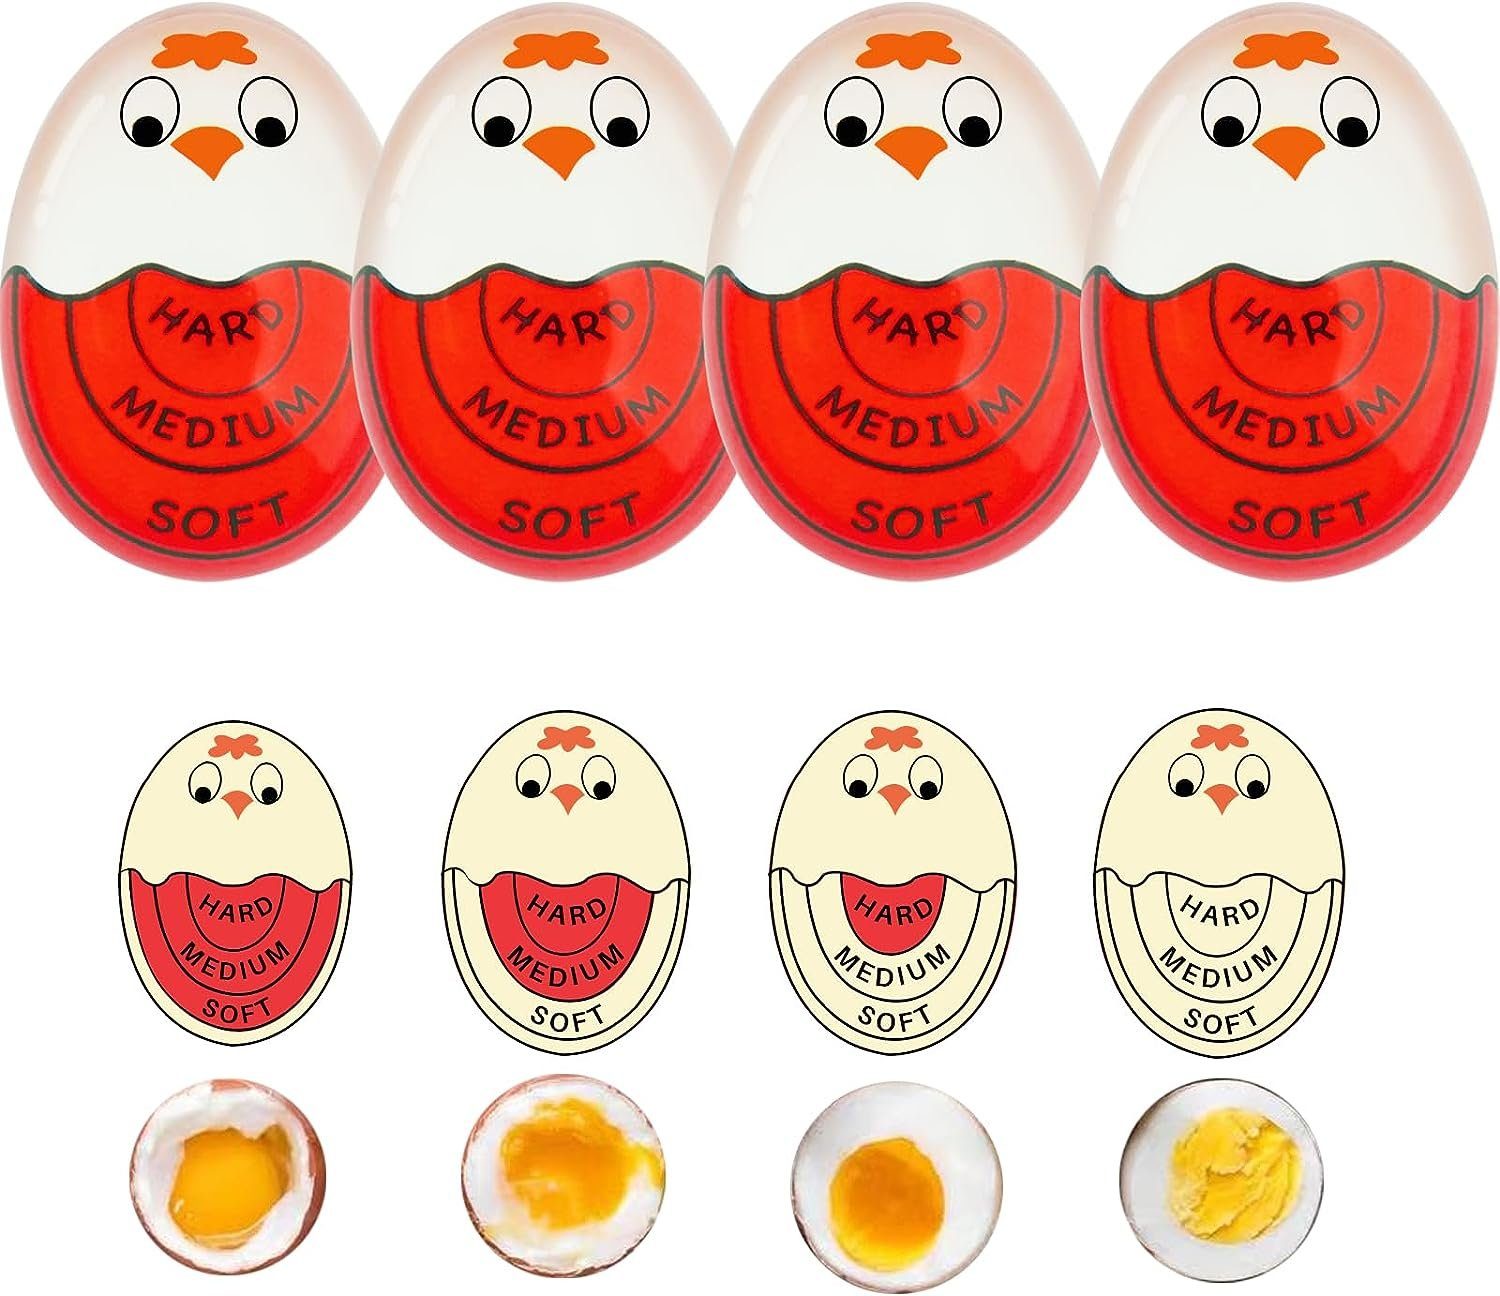 Eier, Eieruhr gekochte Eierkocher,Timer autolock weiss für mit Anzeige Farbwechsel, Eieruhr,Egg hart/medium/weich,wiederverwendbar lustiger Timer